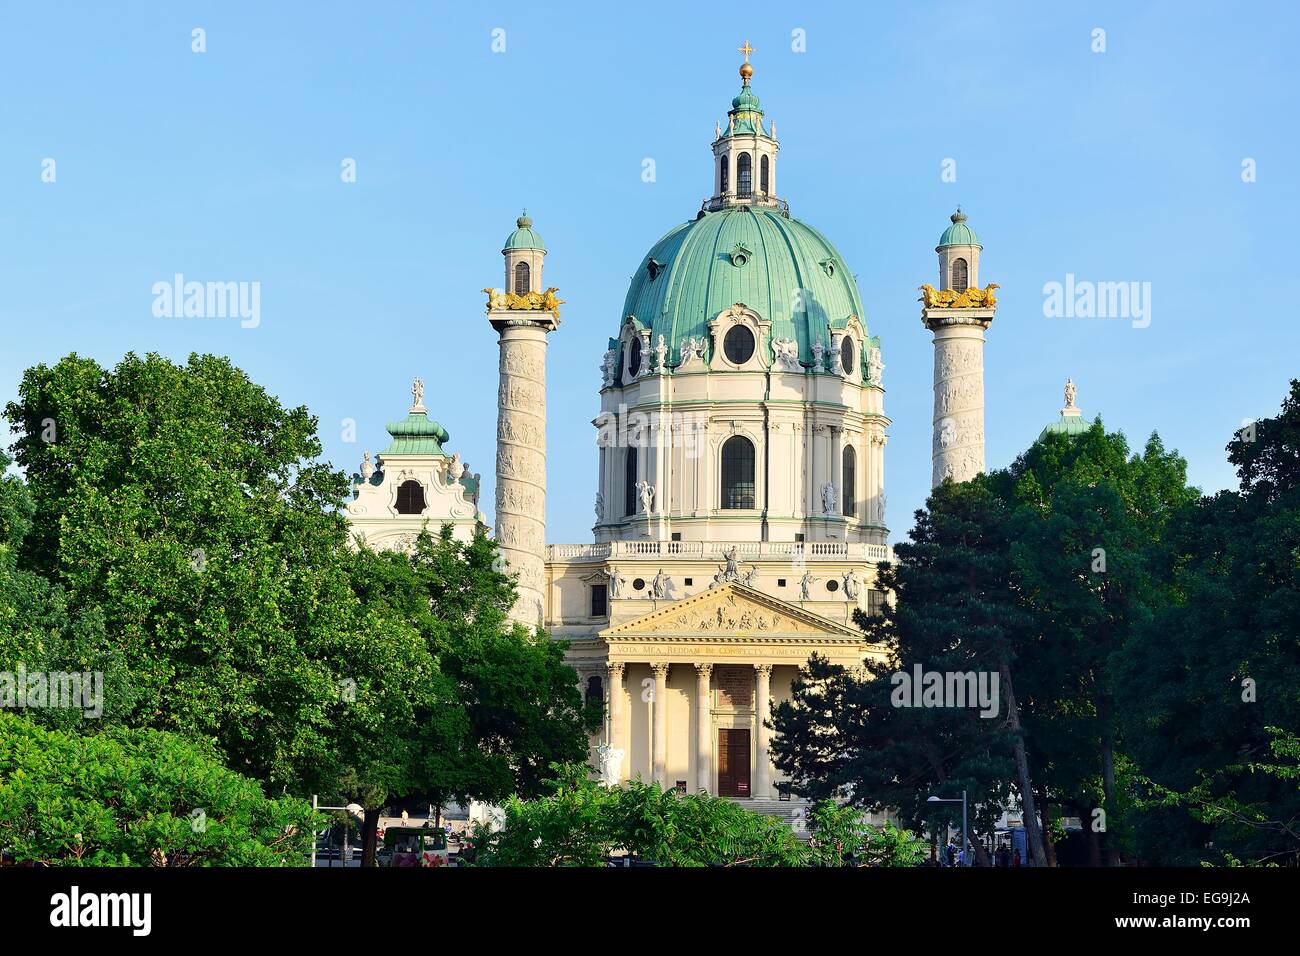 Resselpark mit der barocken Karlskirche Kirche, entworfen von Johann Bernhard Fischer von Erlach, Karlsplatz Quadrat, Vienna Stockfoto